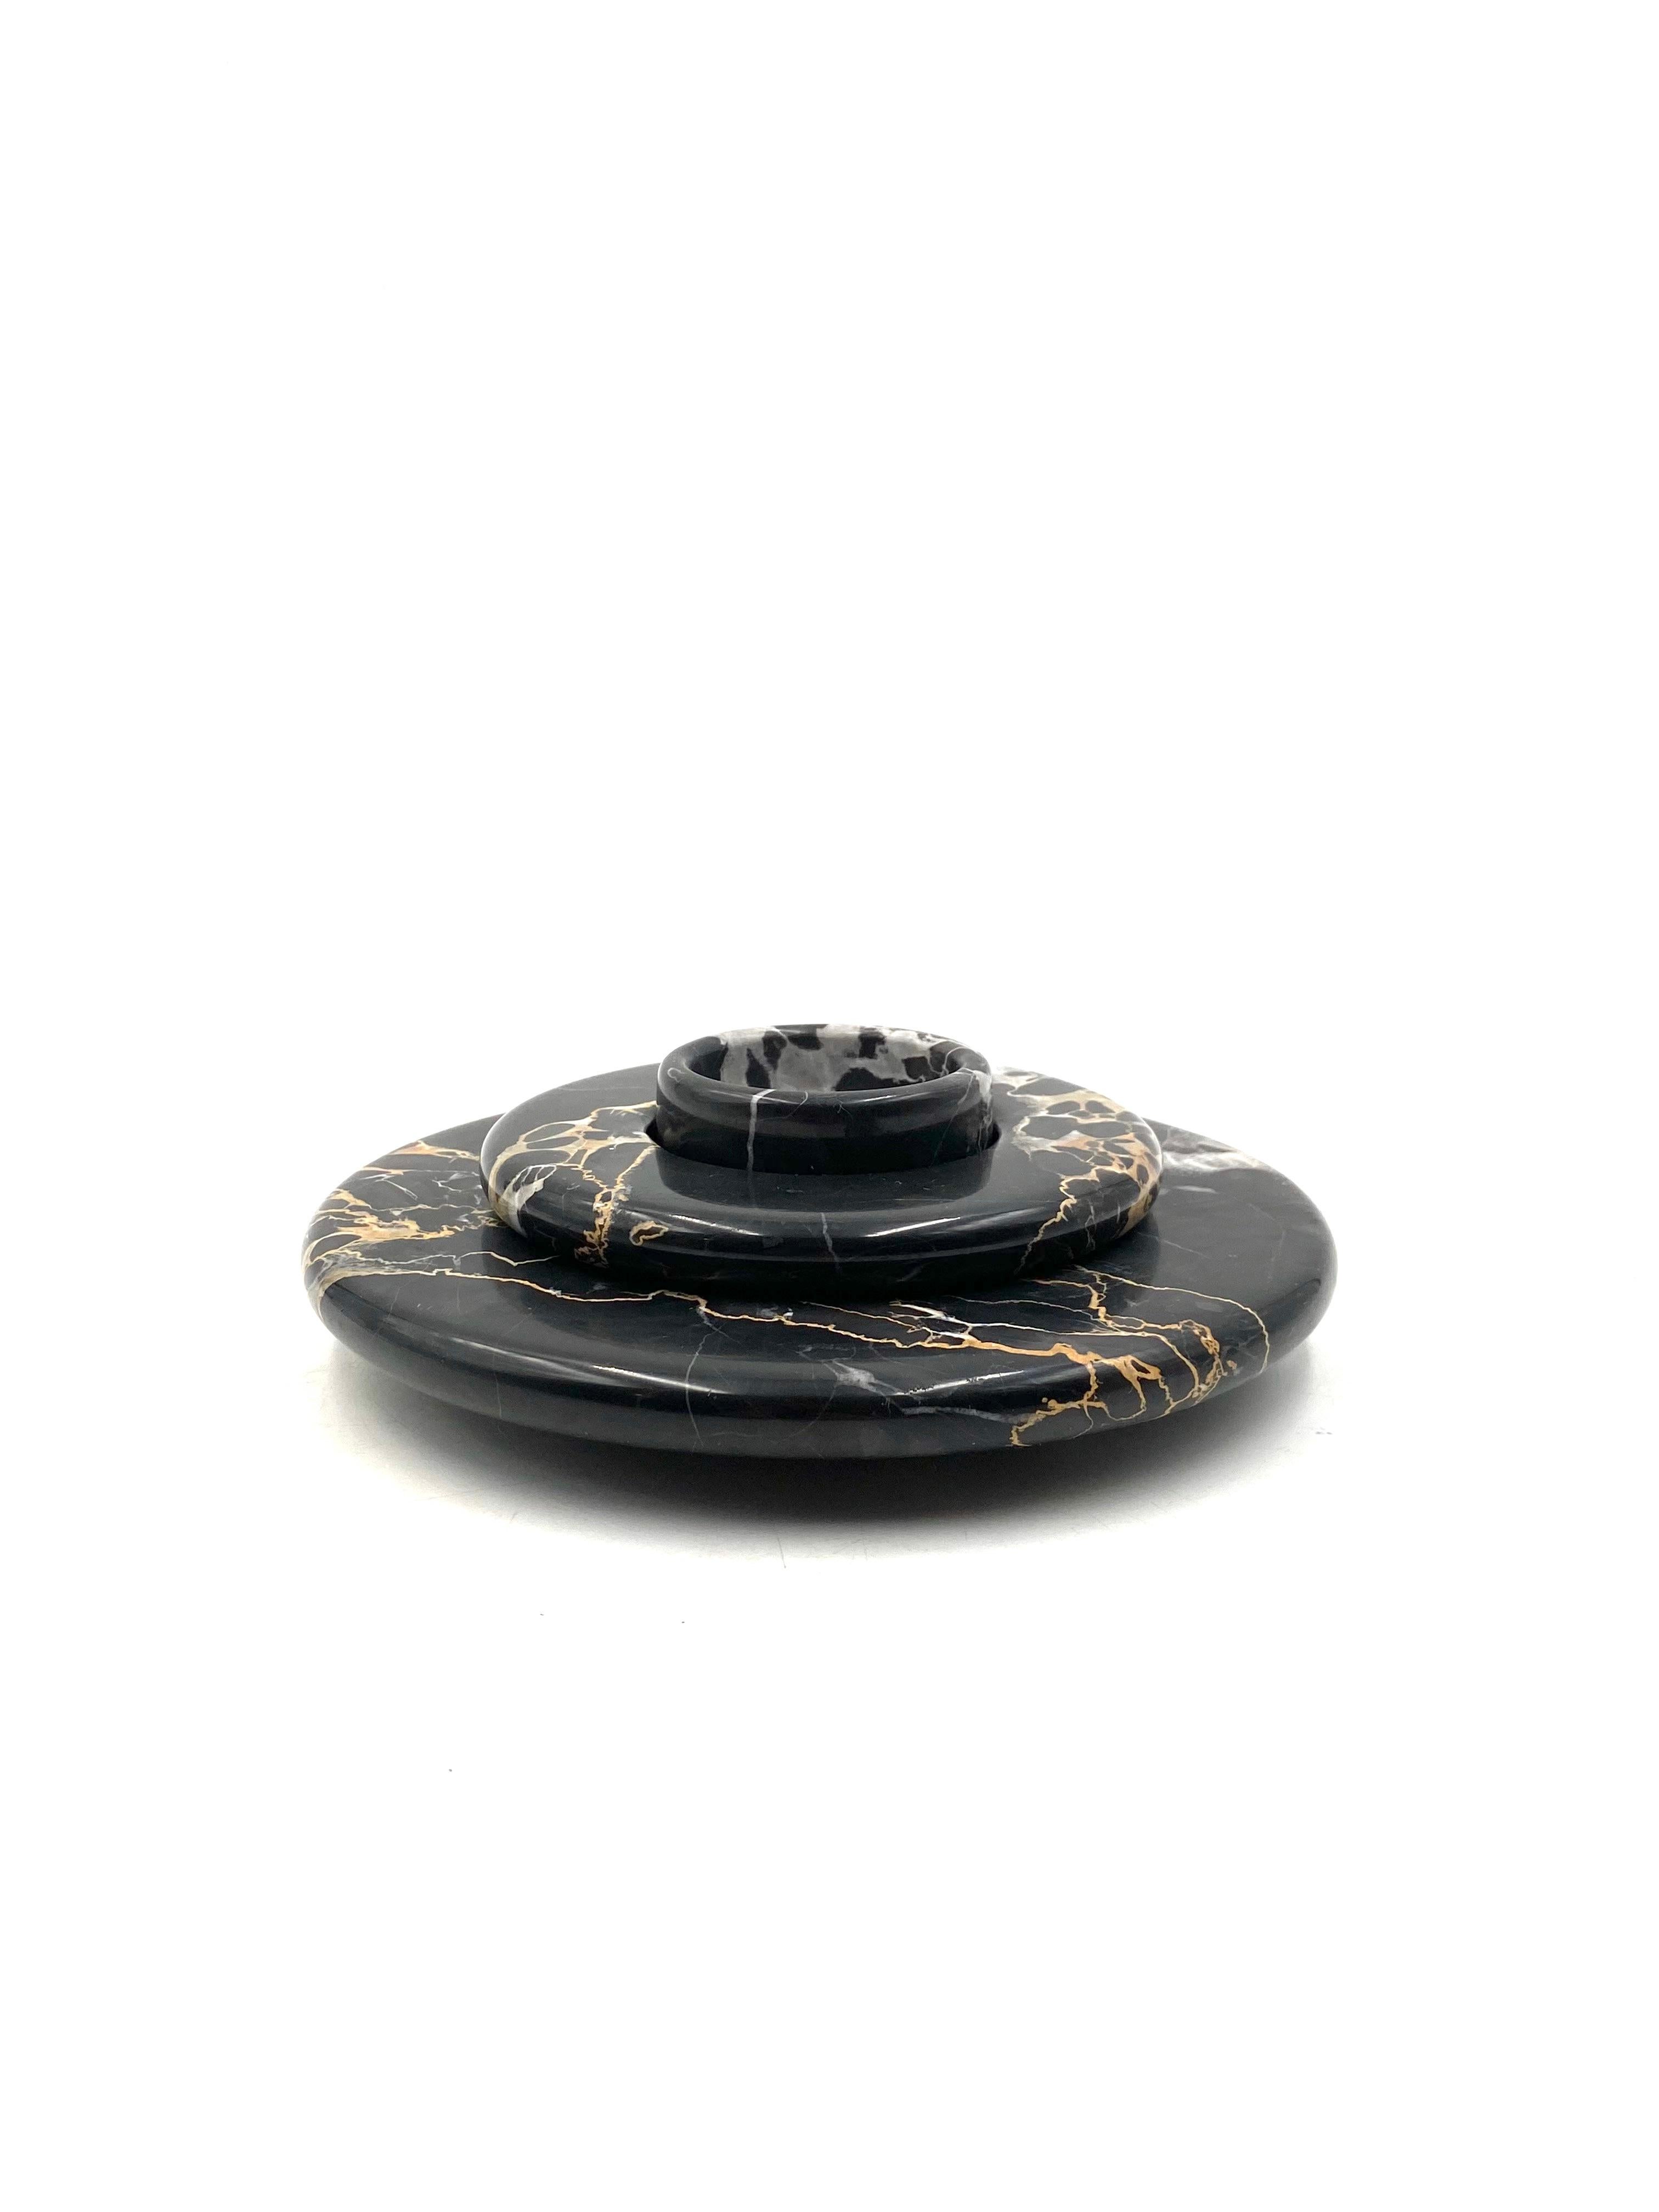 Portoro schwarzer Marmor Tafelaufsatz / vide poche, stapelbarer Aschenbecher 

Casigliani Italien, 1970er Jahre

3 Stück

H 7,5 cm Durchm. 23 cm

Zustand: ausgezeichnet, keine Mängel